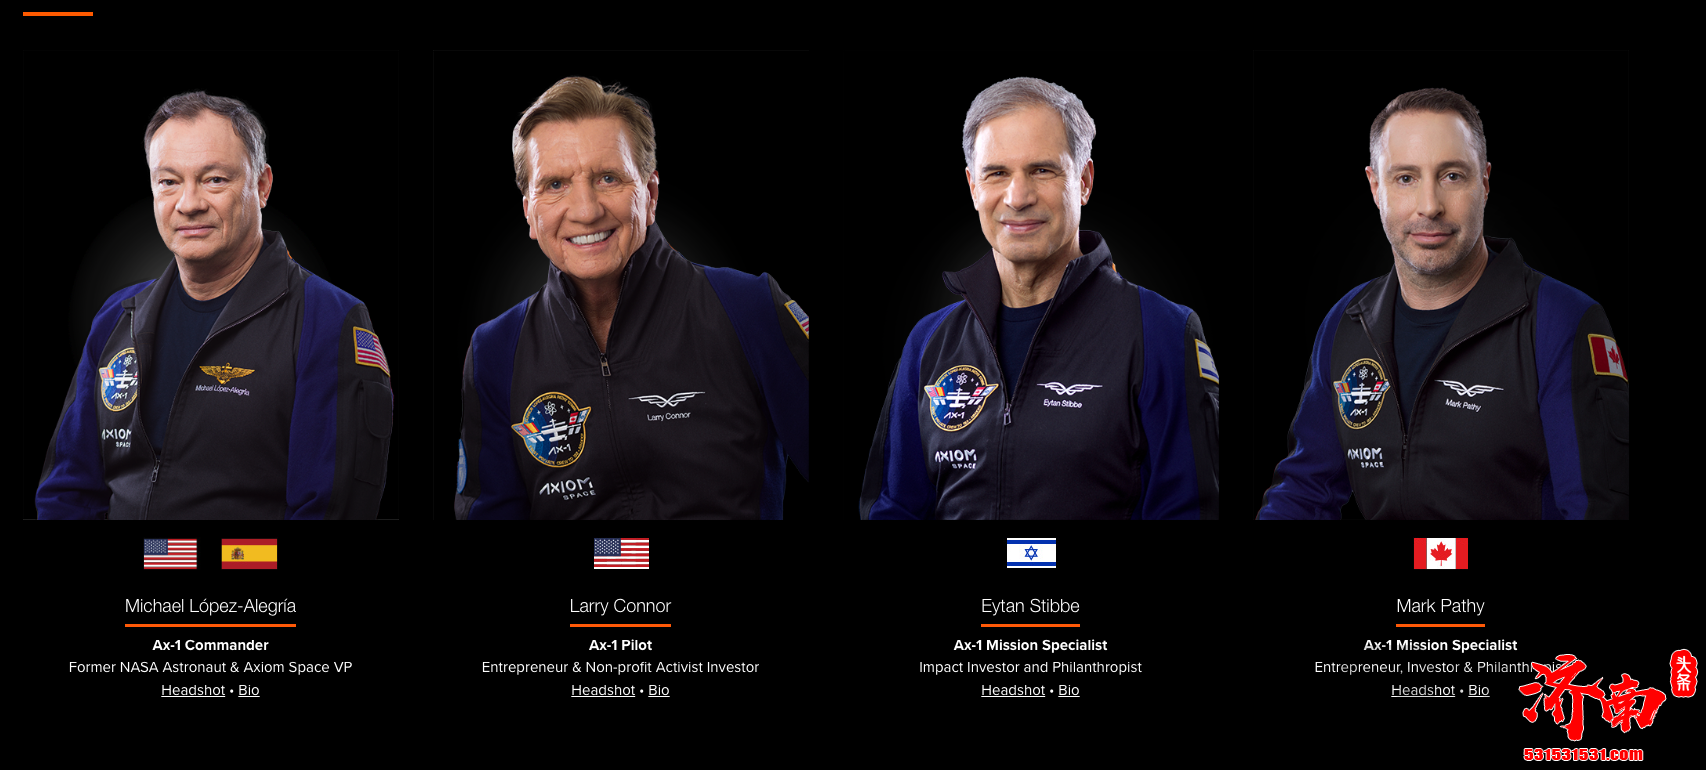 3位富商各花3.5亿元抵达国际空间站 太空10日游